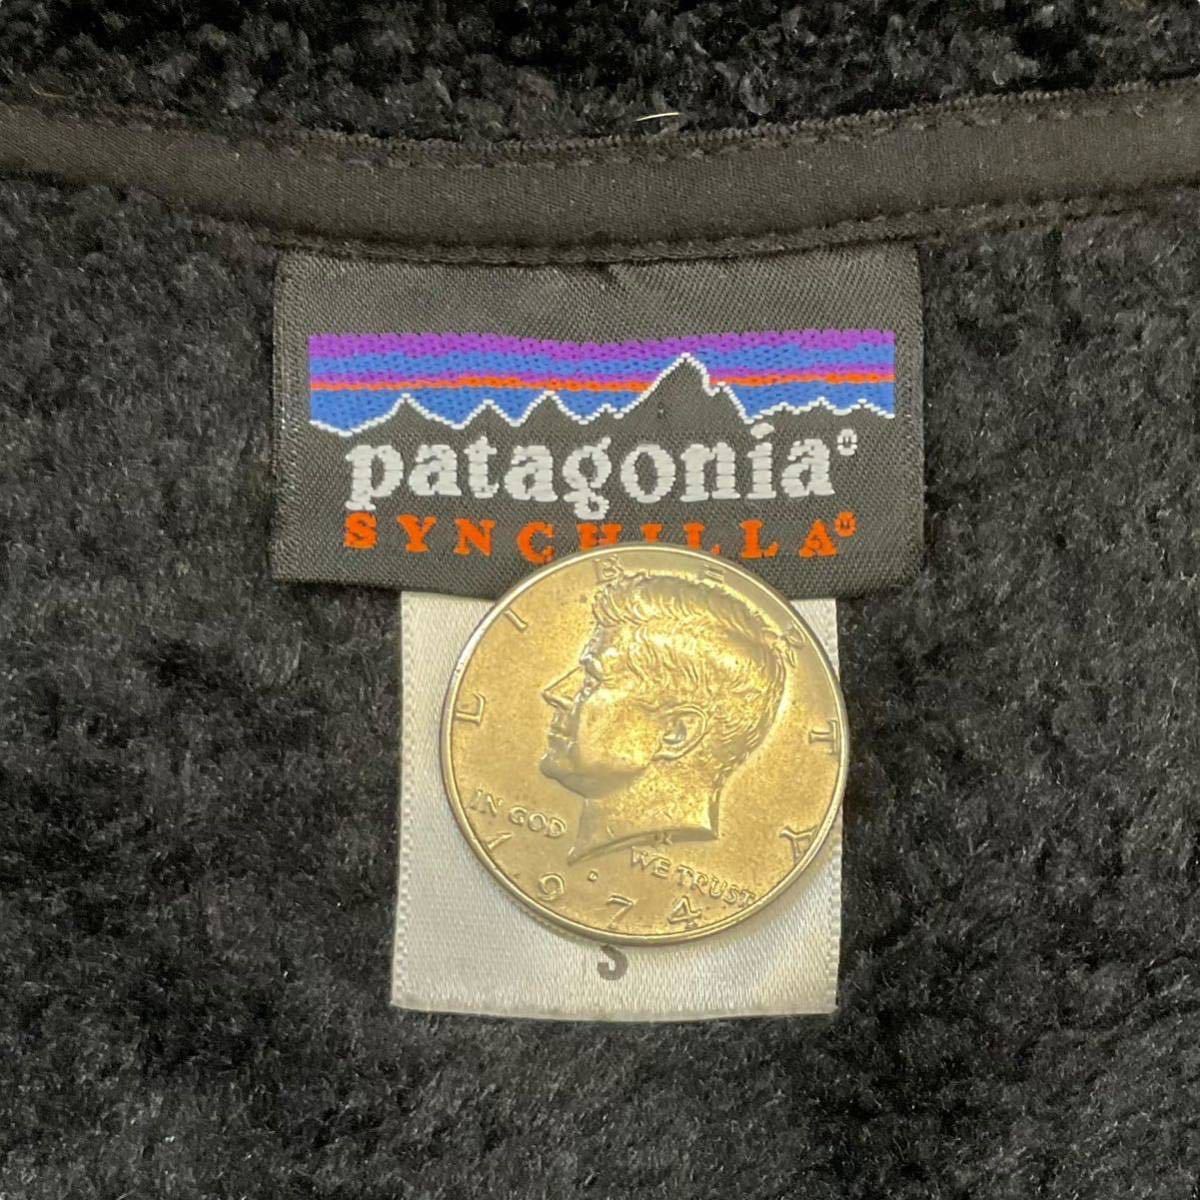 2006年製 patagonia SYNCHILLA ウィメンズ カーリーＱ カーディガン S ブラック フリース ジャケット パタゴニア シンチラ 25731_画像6